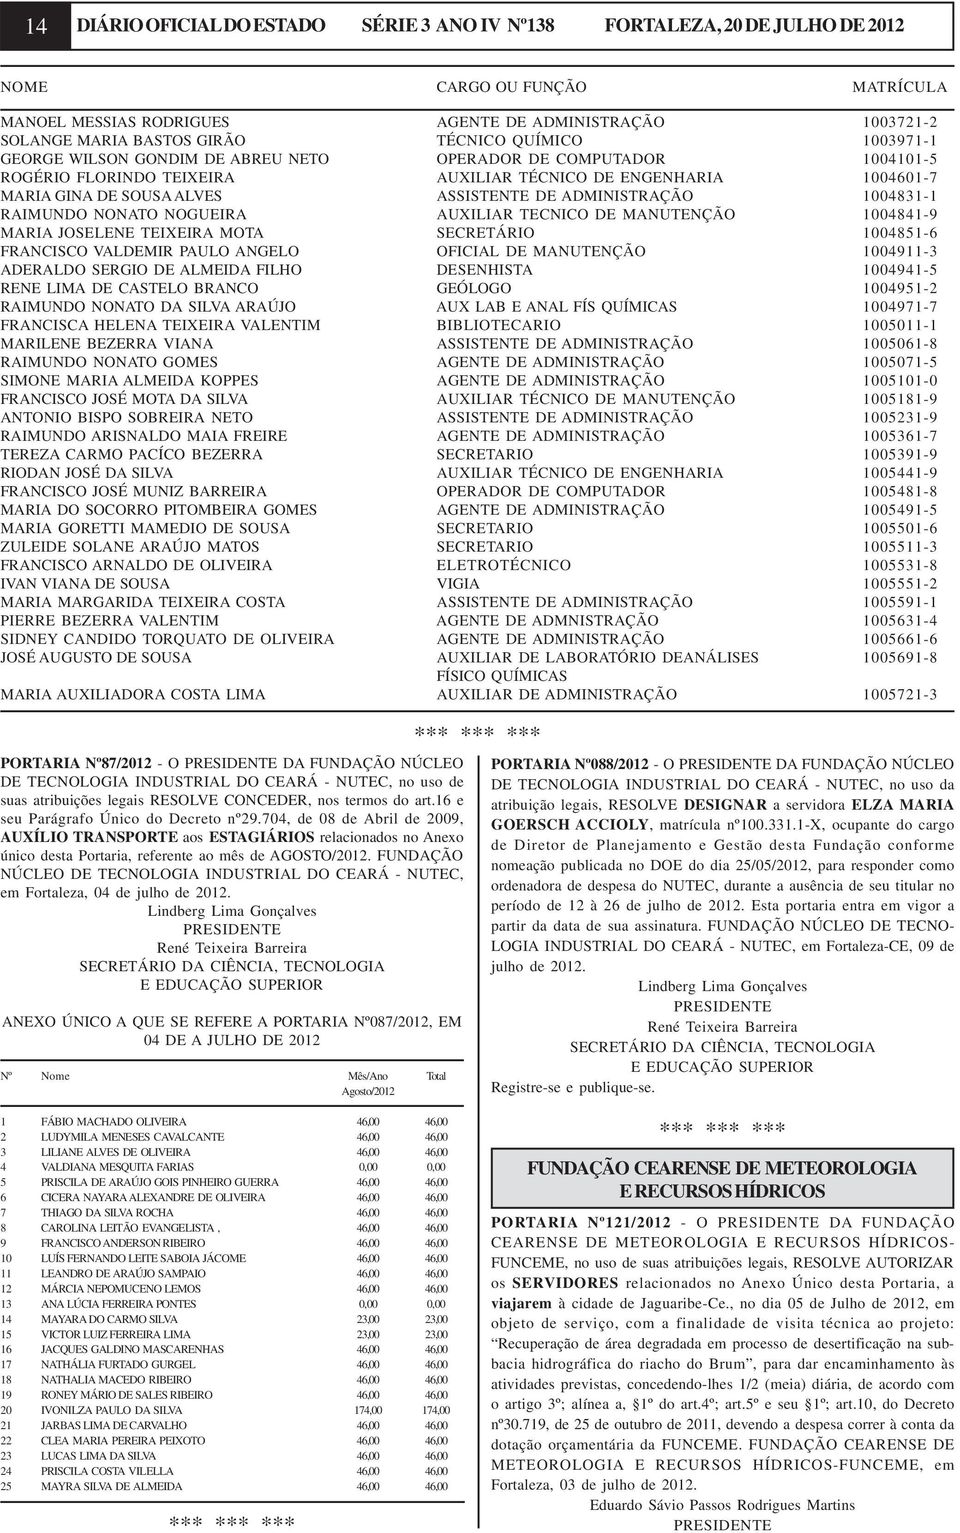 DE ADMINISTRAÇÃO 1004831-1 RAIMUNDO NONATO NOGUEIRA AUXILIAR TECNICO DE MANUTENÇÃO 1004841-9 MARIA JOSELENE TEIXEIRA MOTA SECRETÁRIO 1004851-6 FRANCISCO VALDEMIR PAULO ANGELO OFICIAL DE MANUTENÇÃO